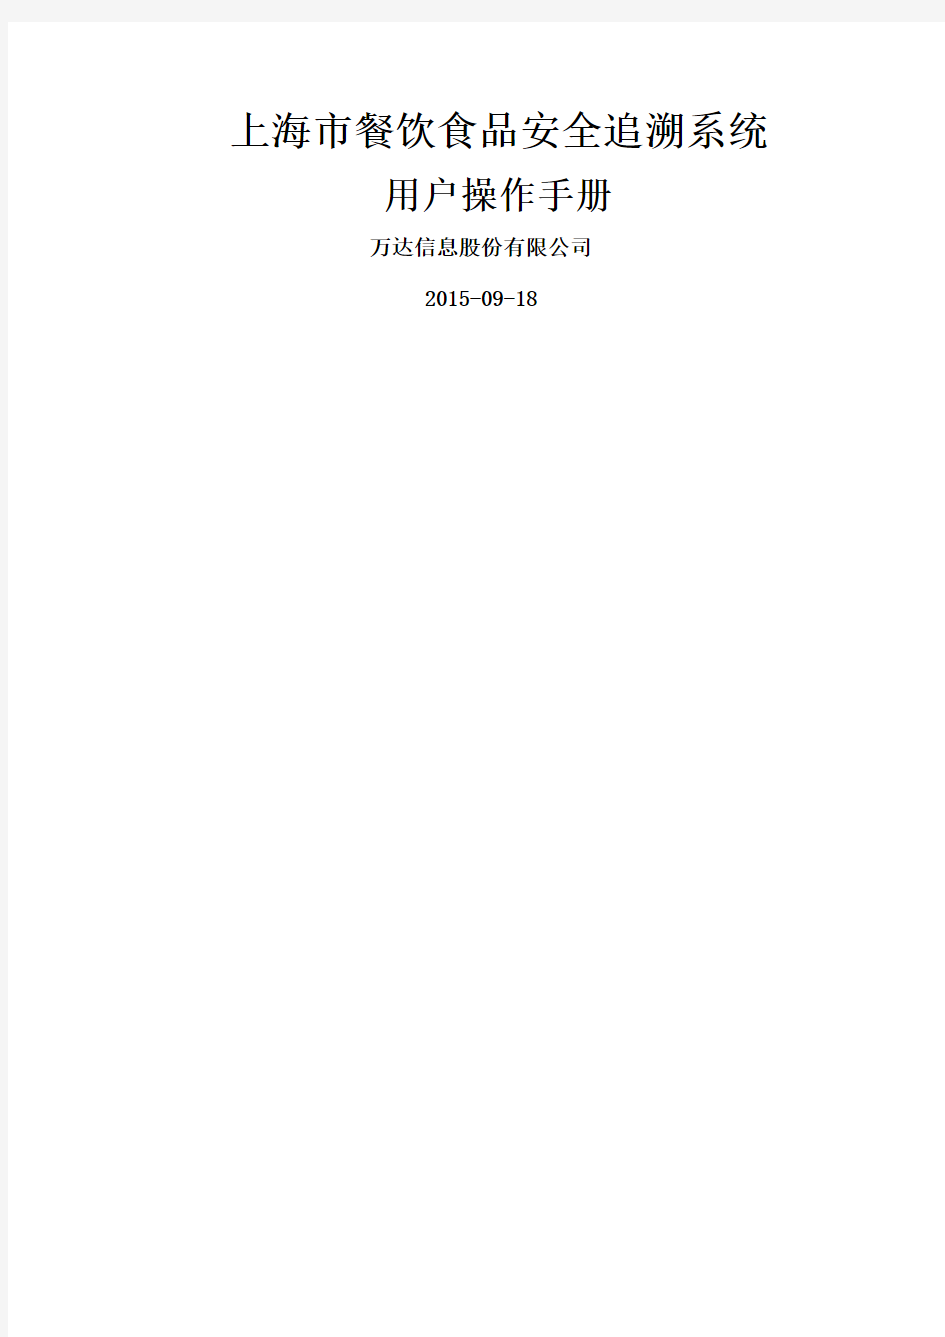 上海市餐饮行业食品安全追溯系统操作手册